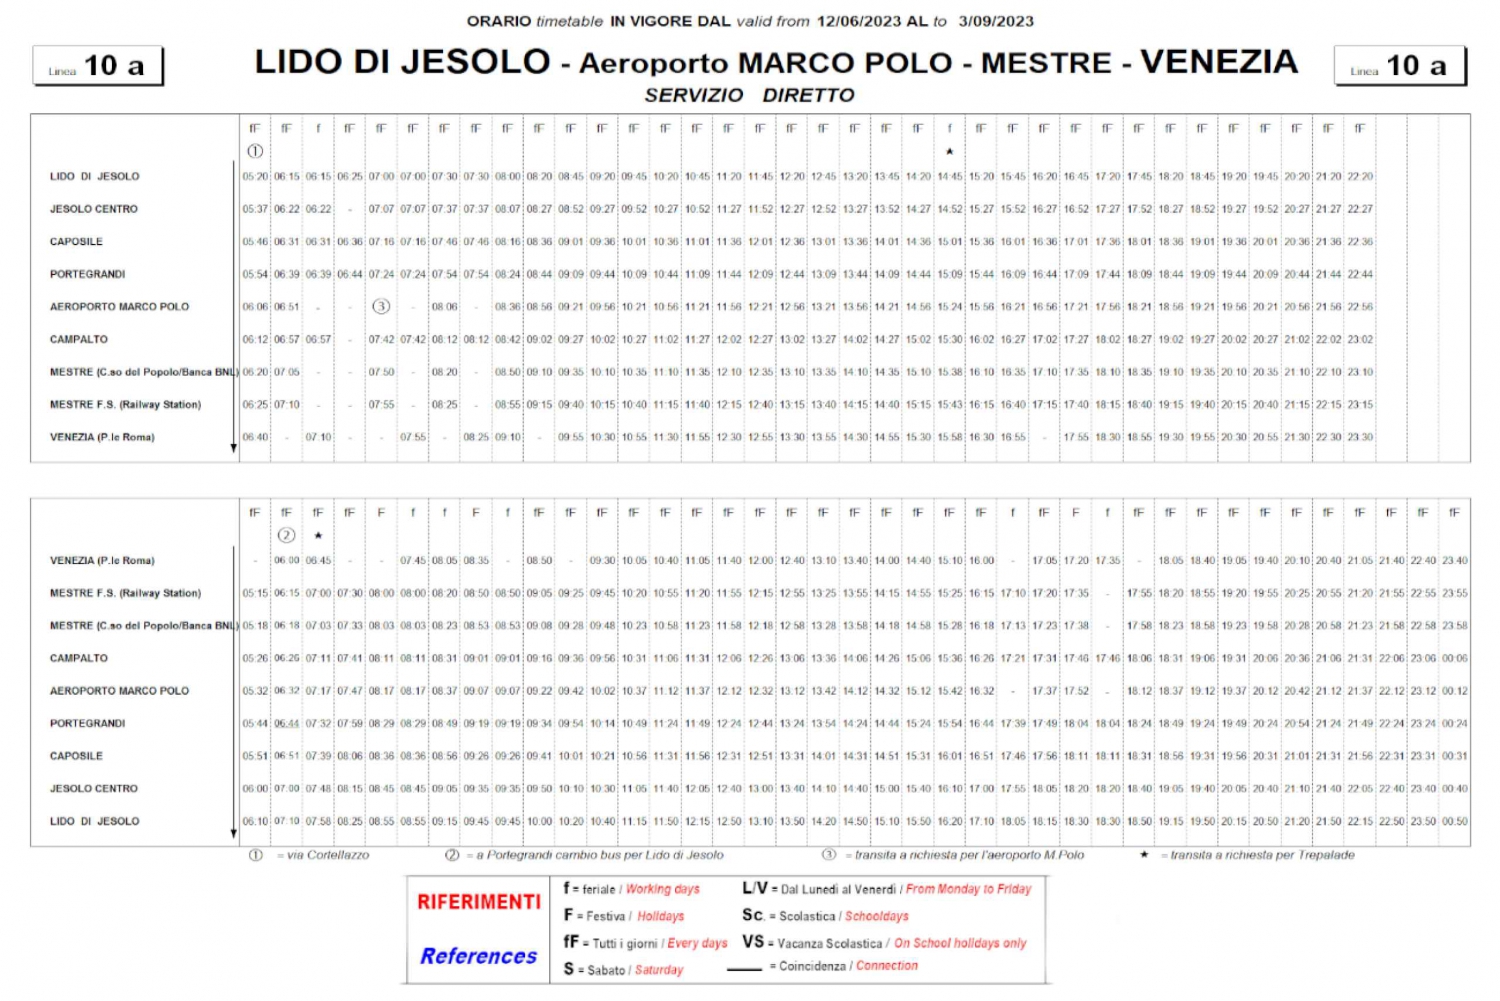 Bus Transfer between Lido di Jesolo and Venice